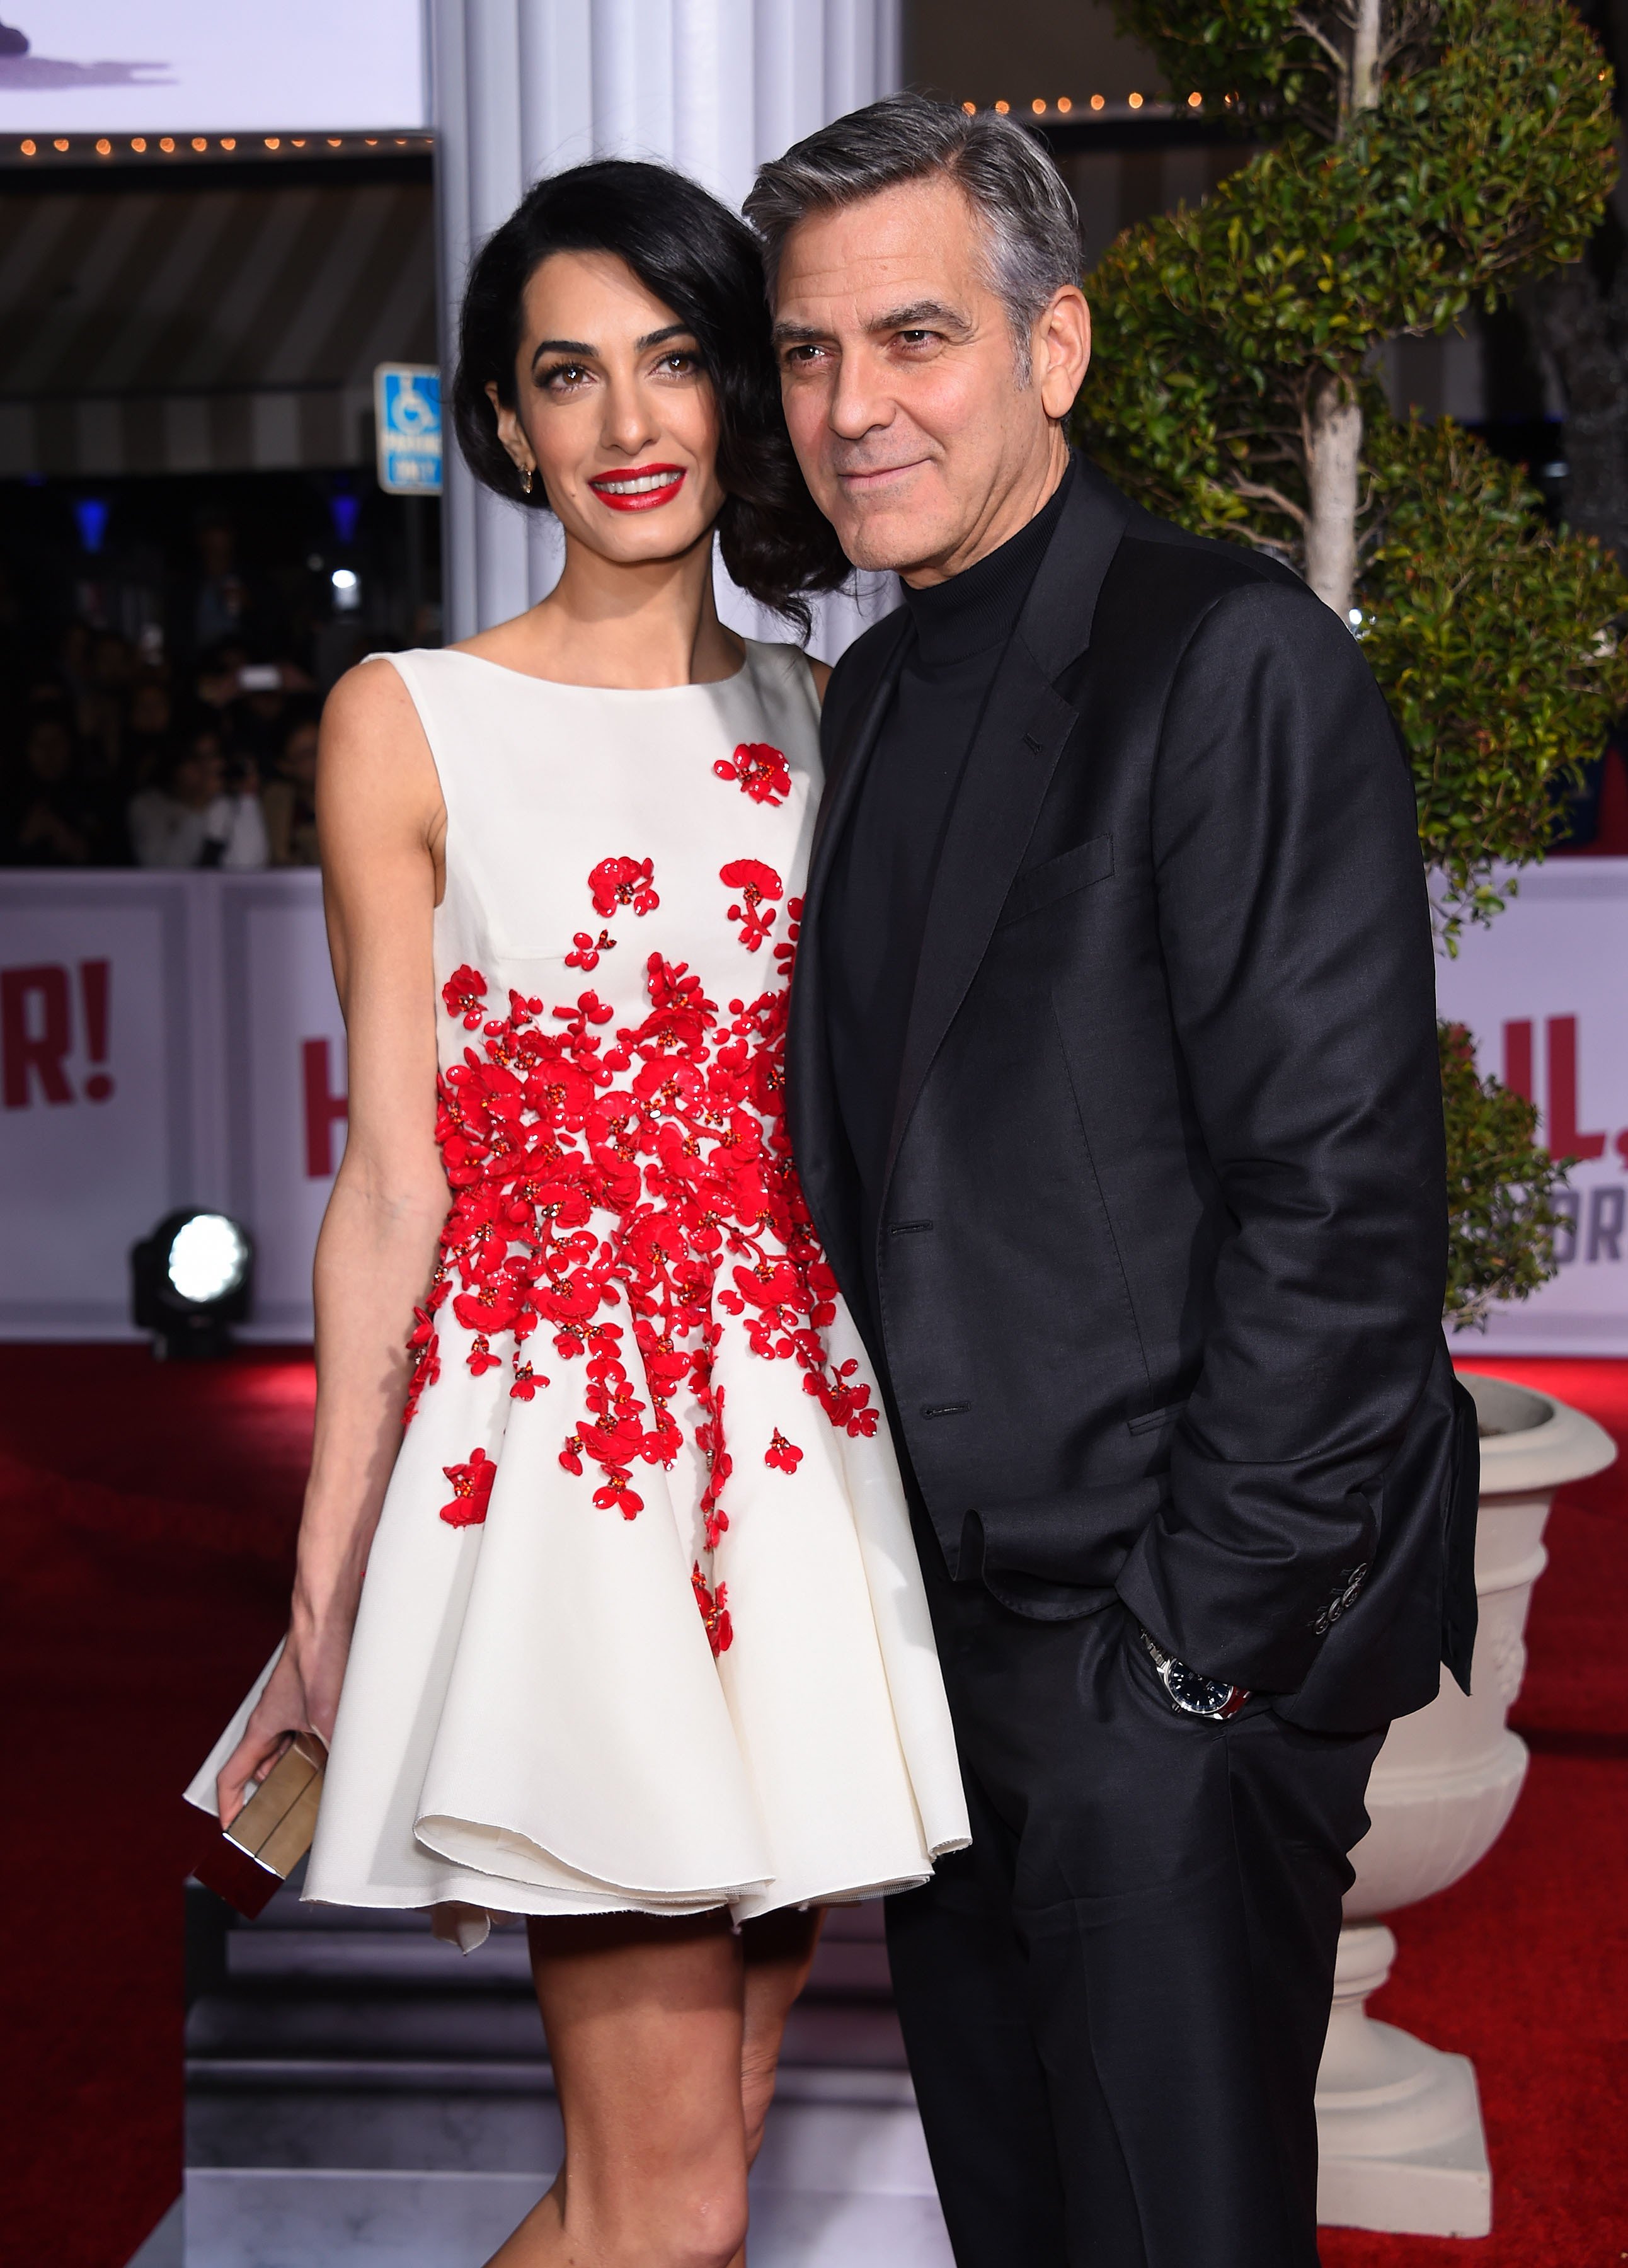 George Clooney & Amal Alamuddin kommen am 01. Februar 2016 zur Weltpremiere von "Hail, Caesar". | Quelle: Shutterstock